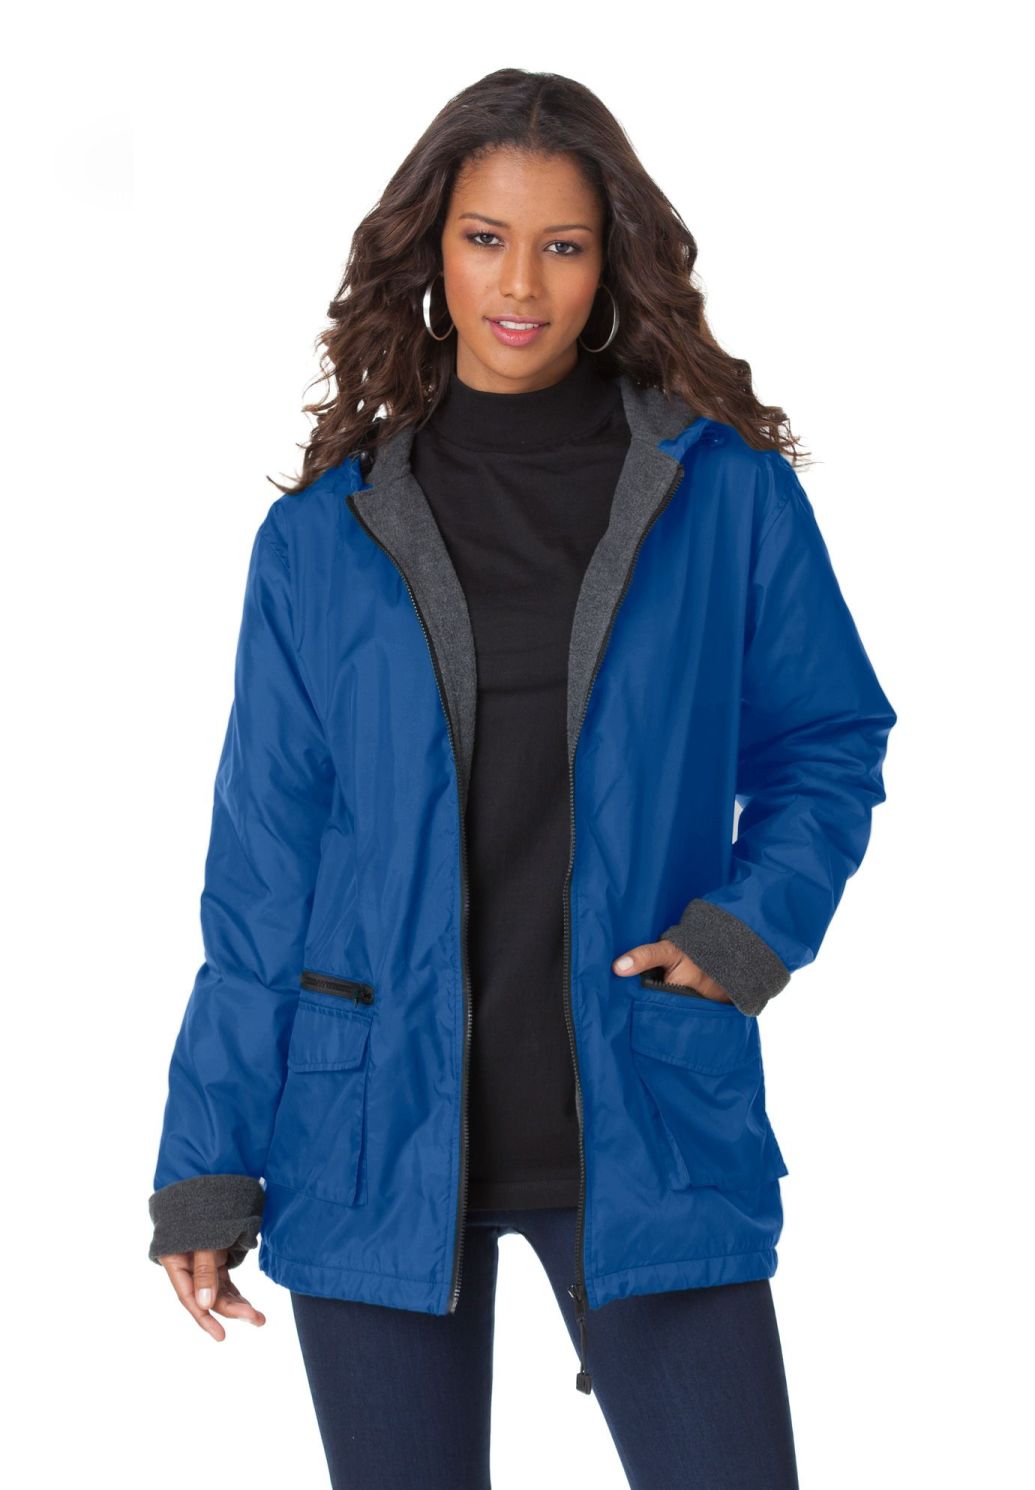 Plus Size Rain Jackets for Women – Attire Plus Size